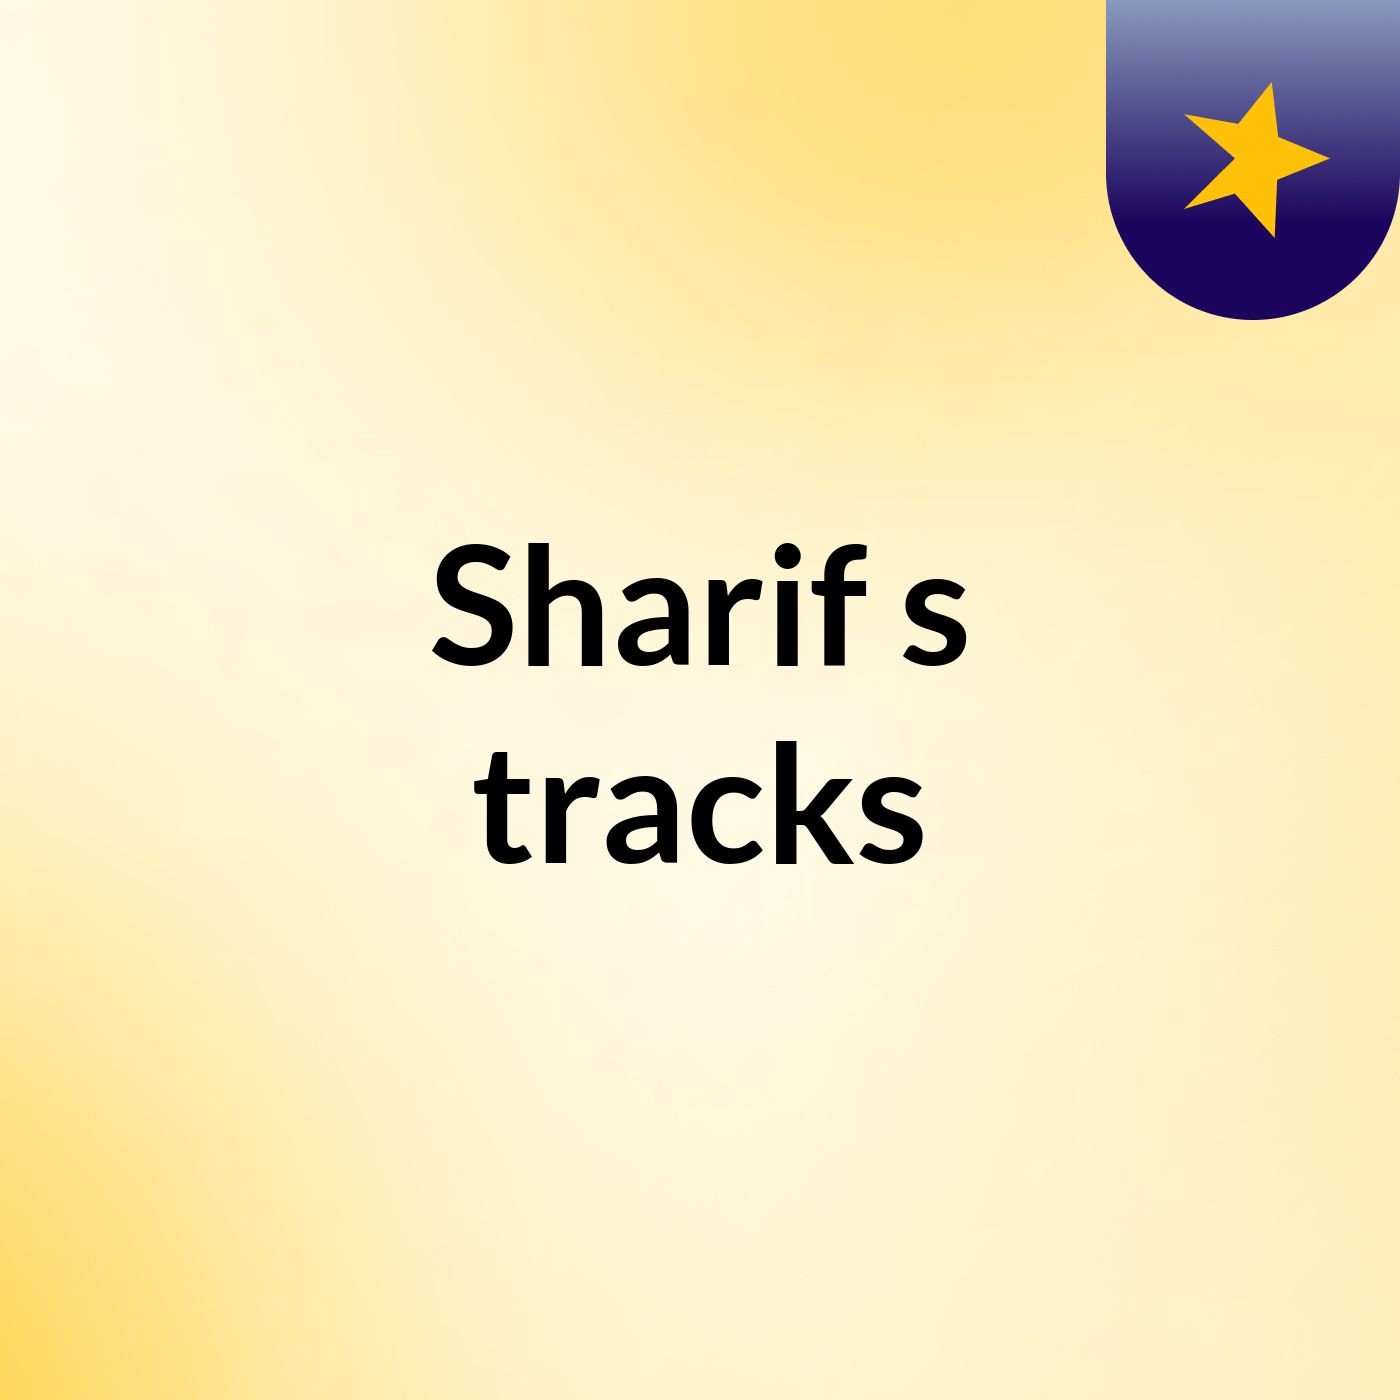 Sharif's tracks